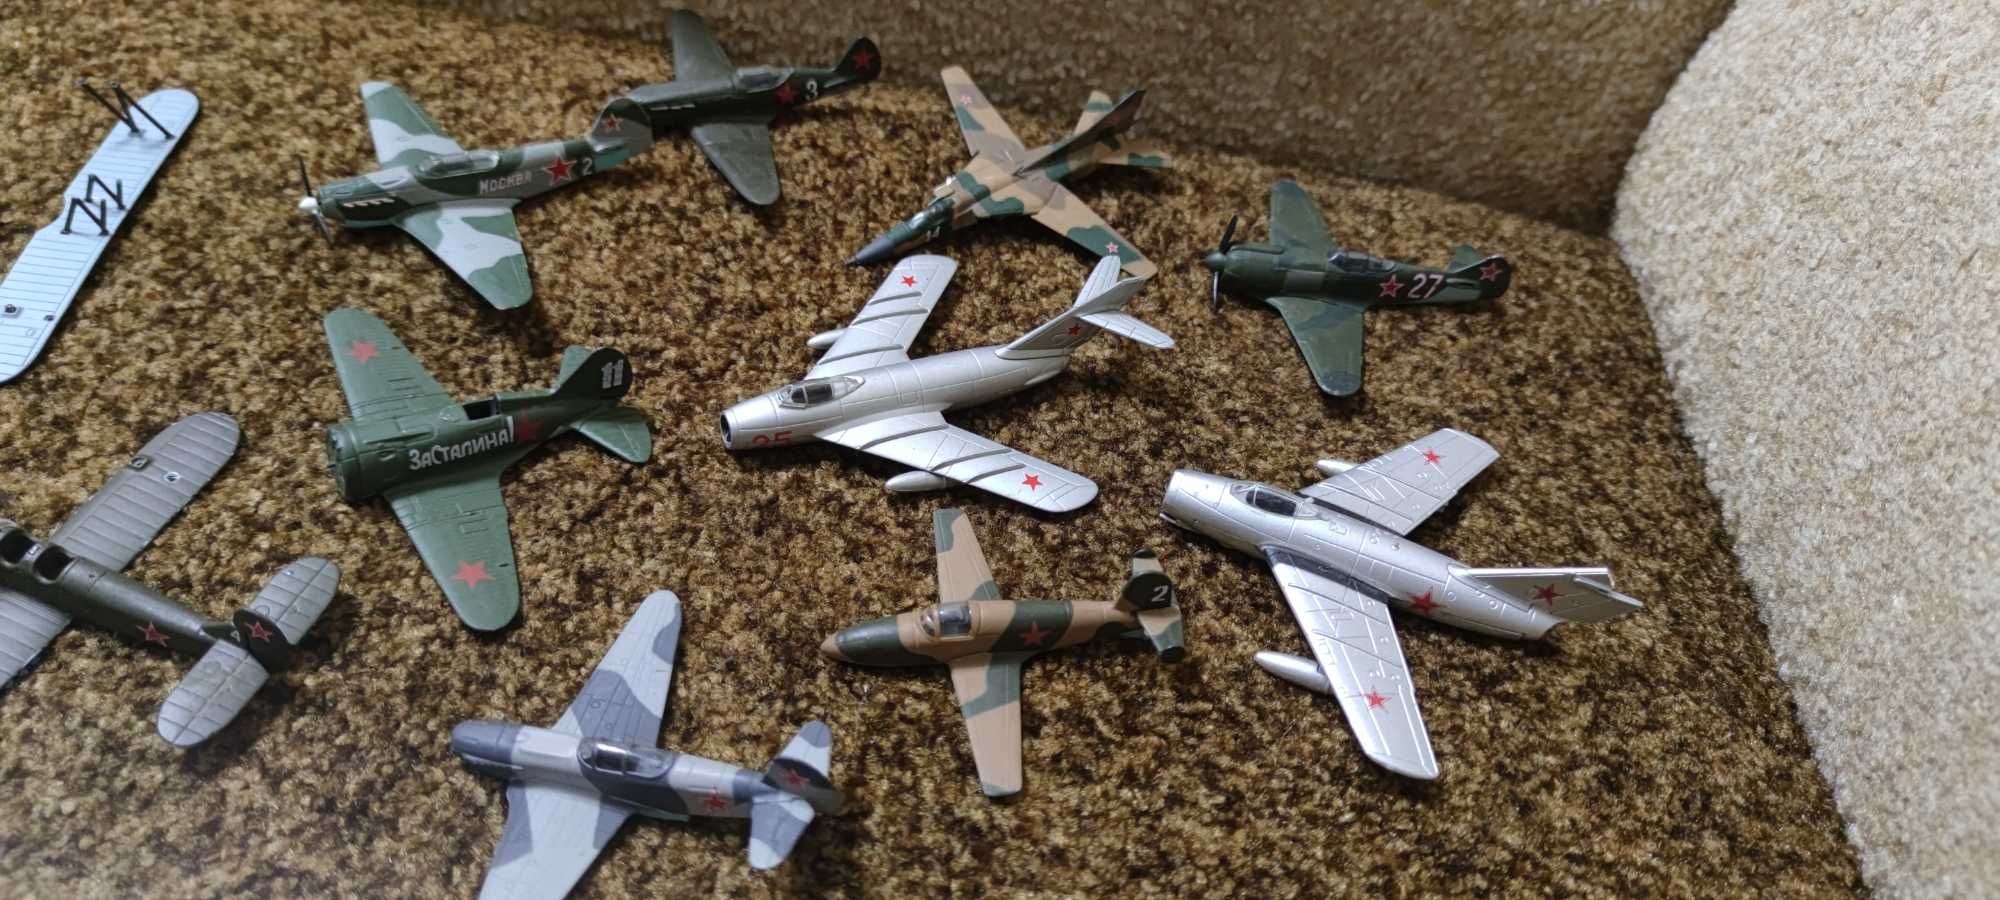 Коллекция металлических самолётов.